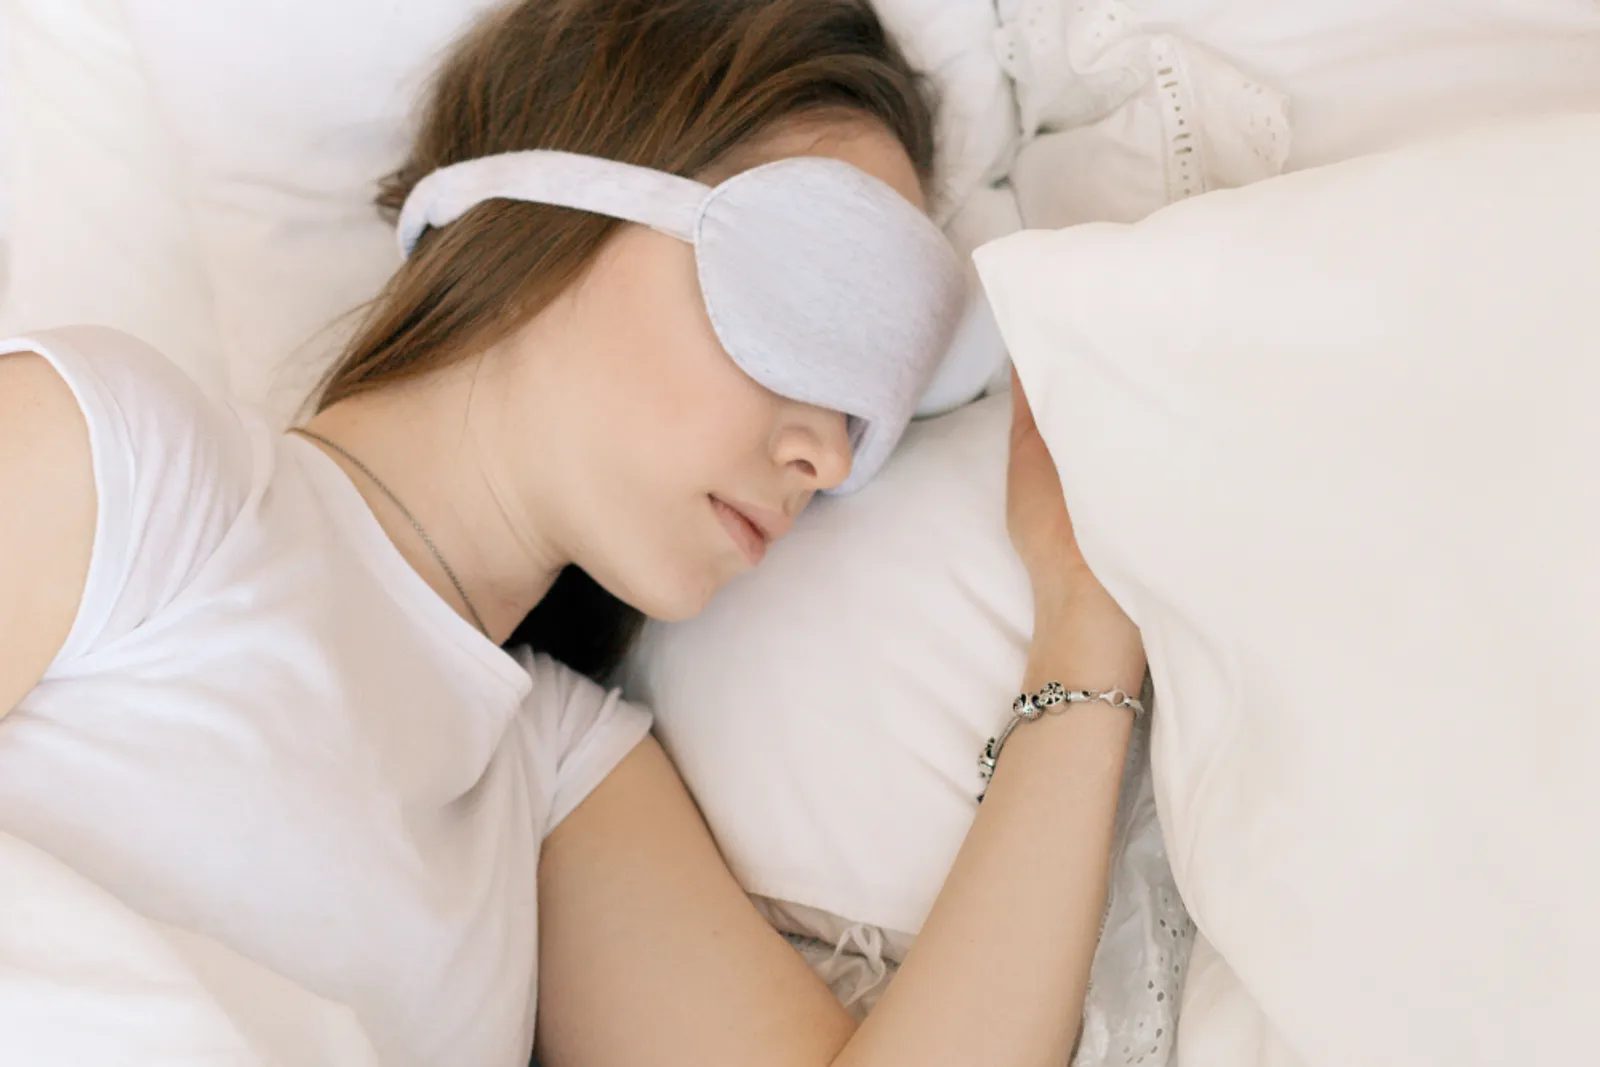 5 Cara Memperbaiki Jam Tidur yang Berantakan